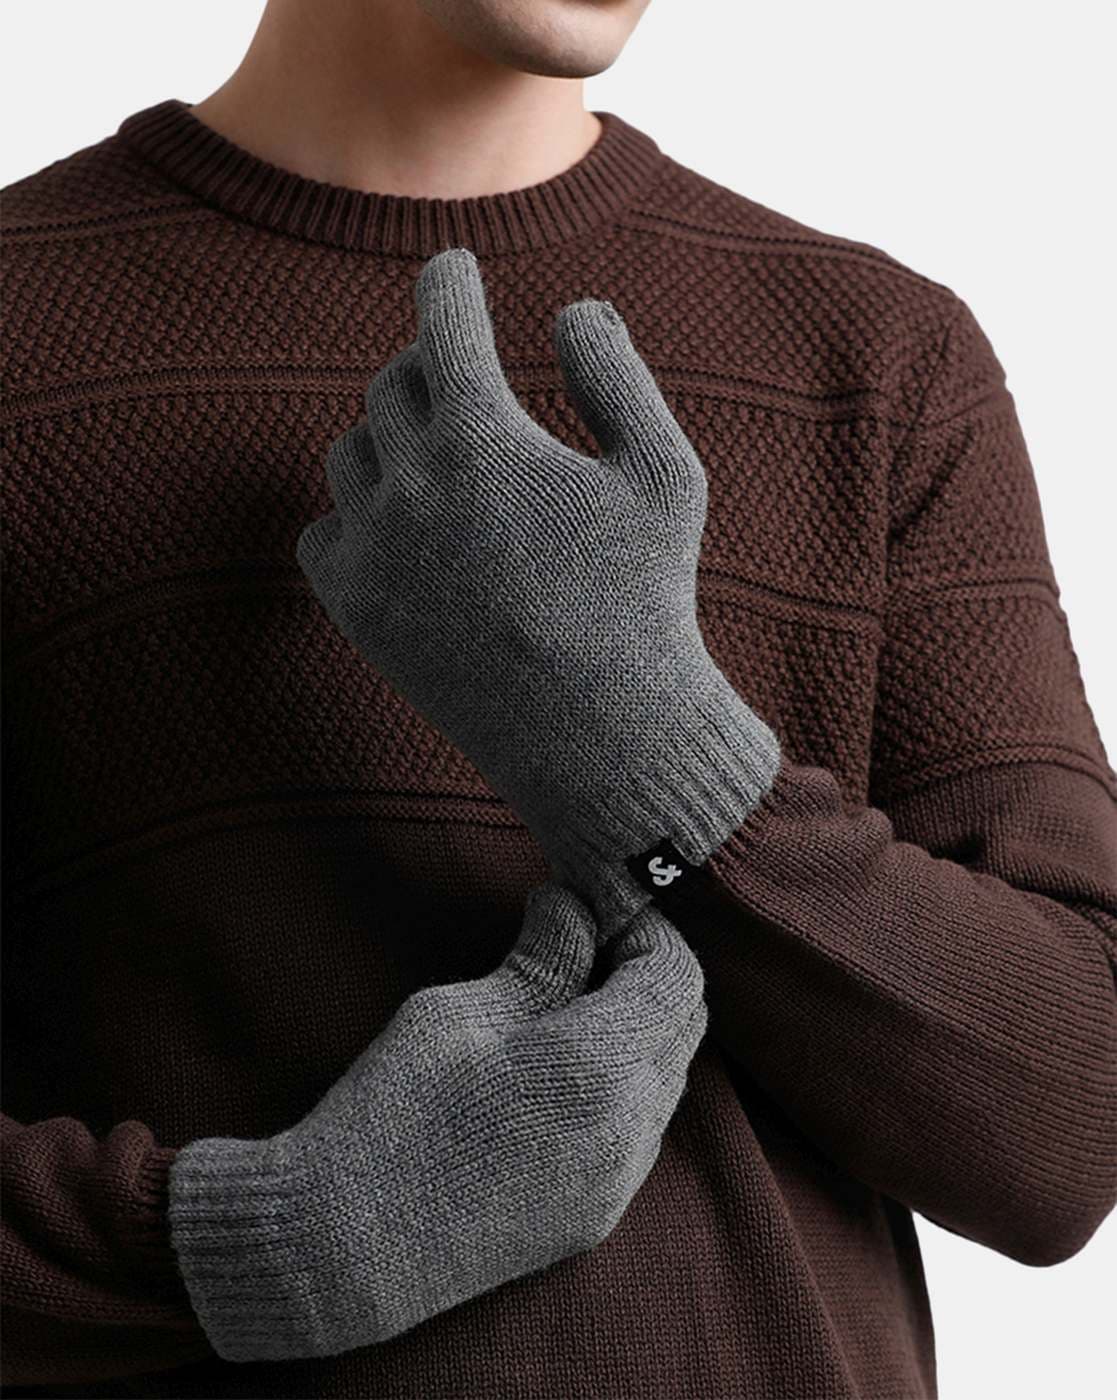 Hiems, Grey Wool Gloves, Sidegren